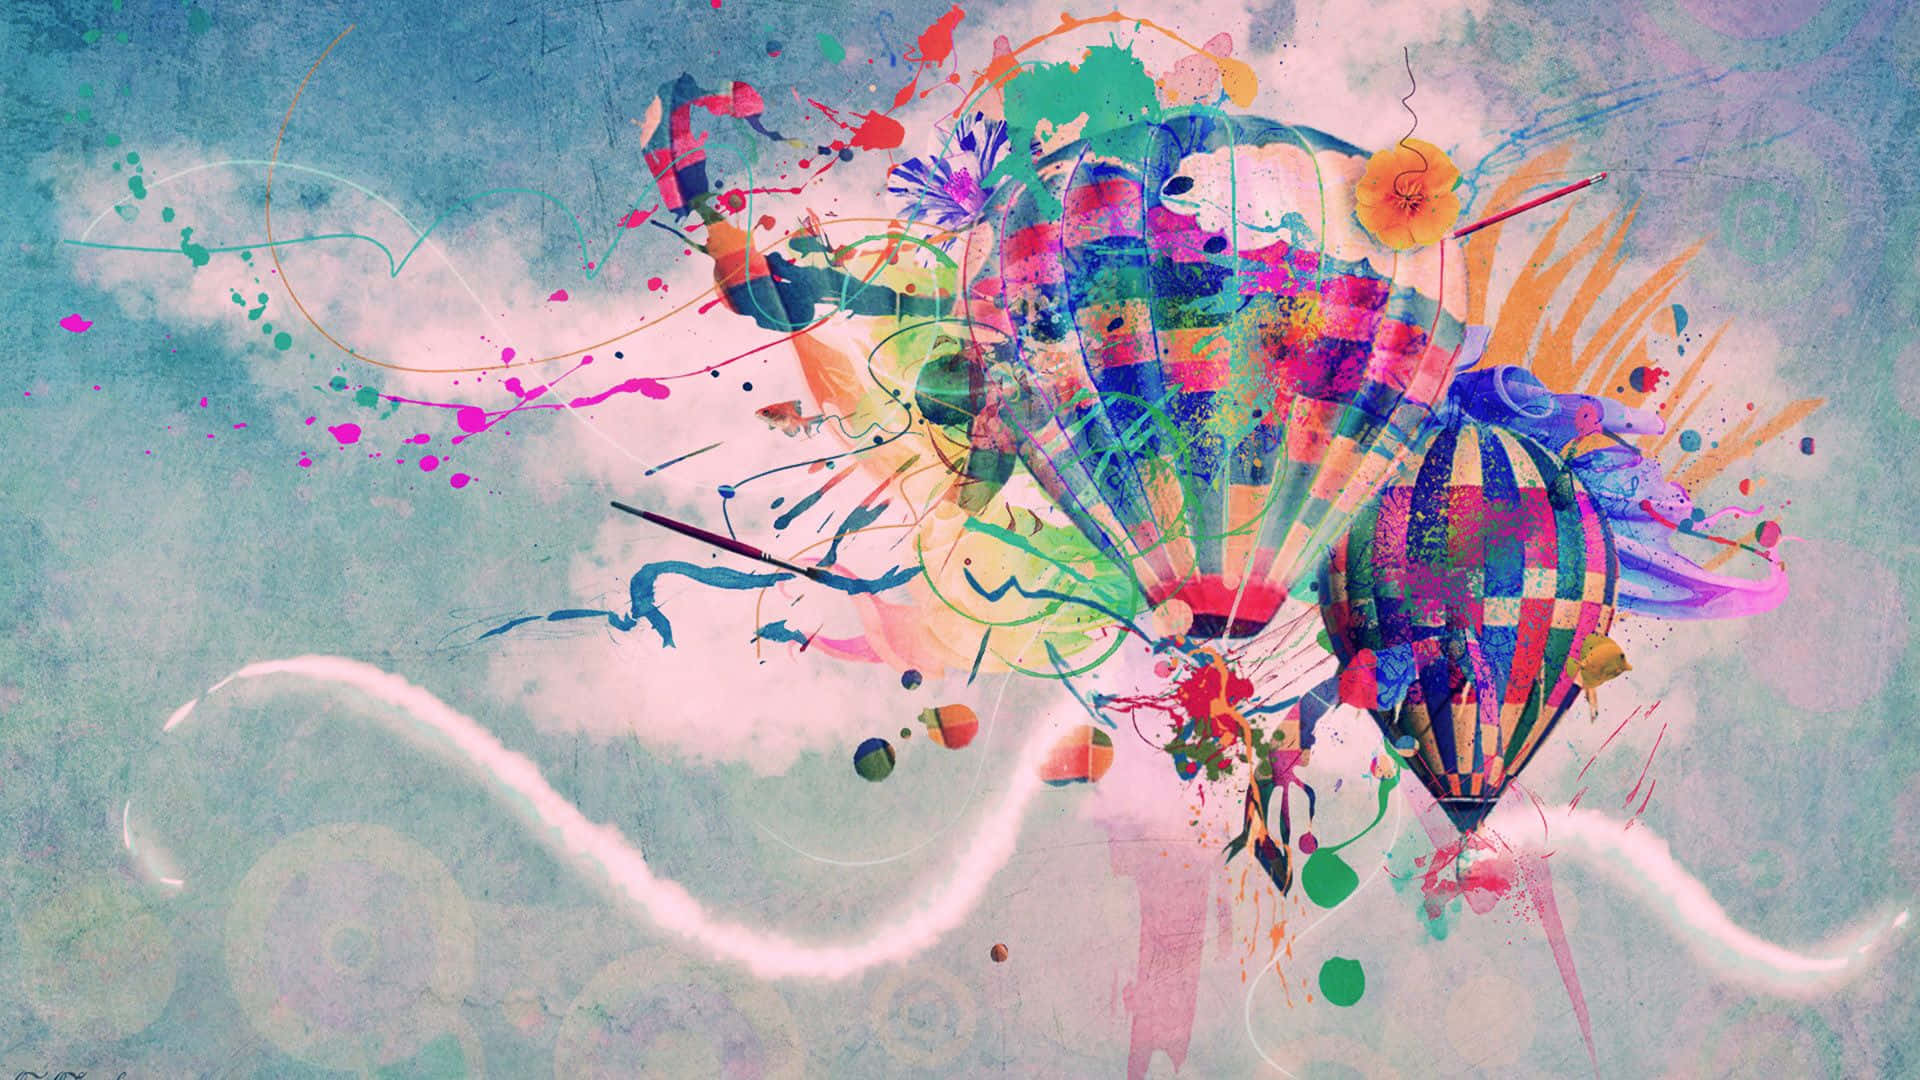 Hintergrundmit Ballons - Buntes Heißluftballon Gemälde